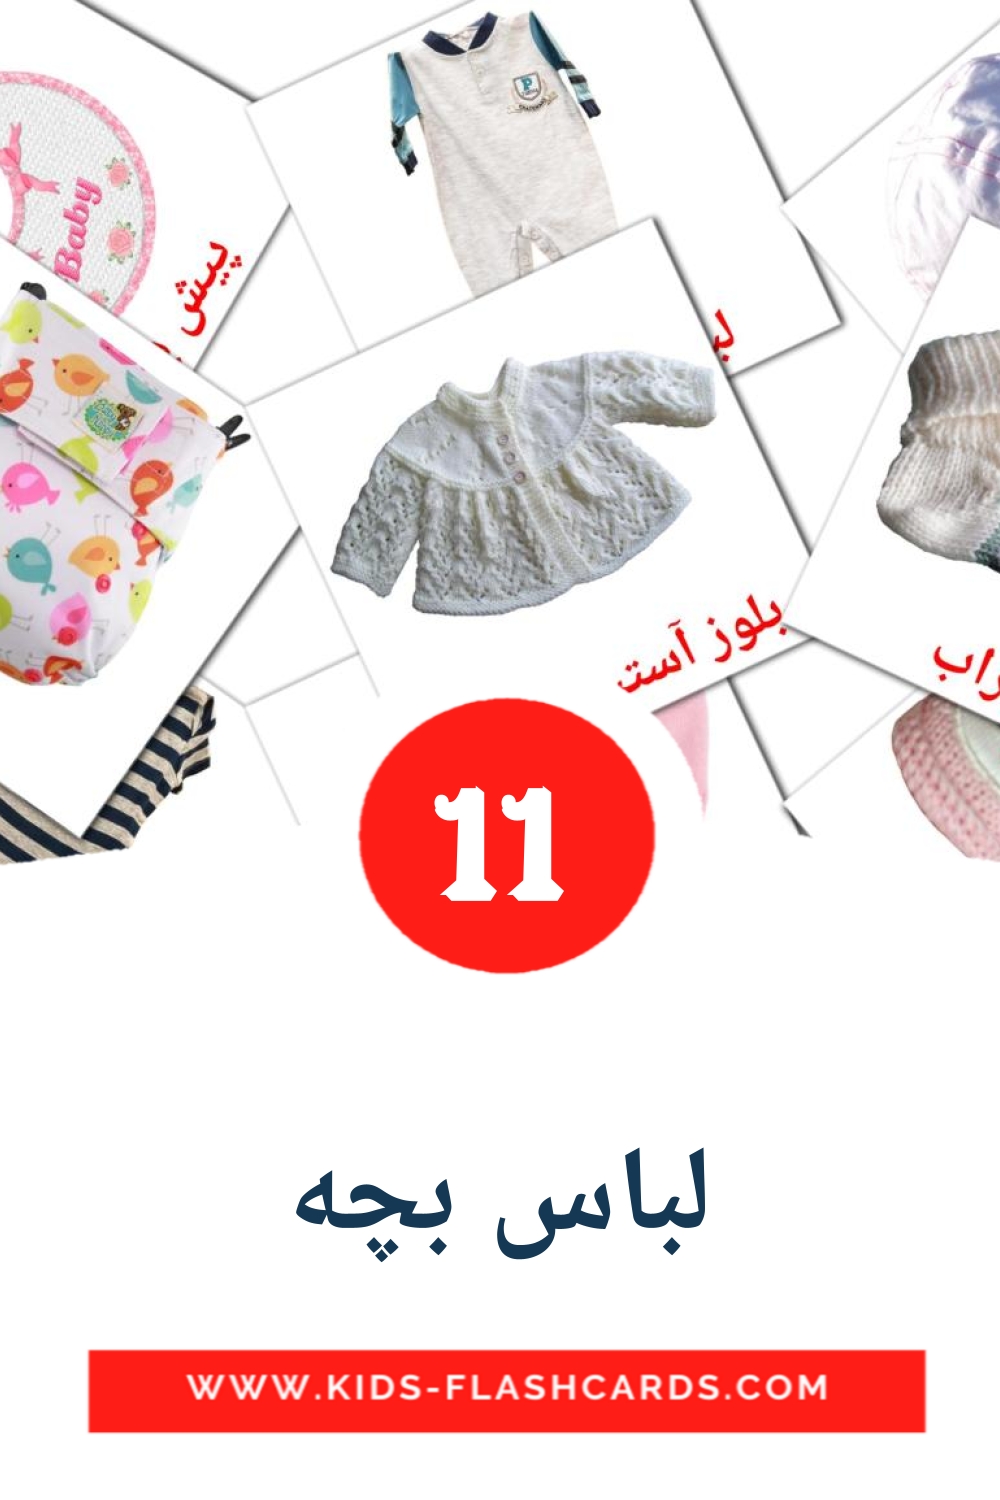 11 لباس بچه fotokaarten voor kleuters in het perzisch